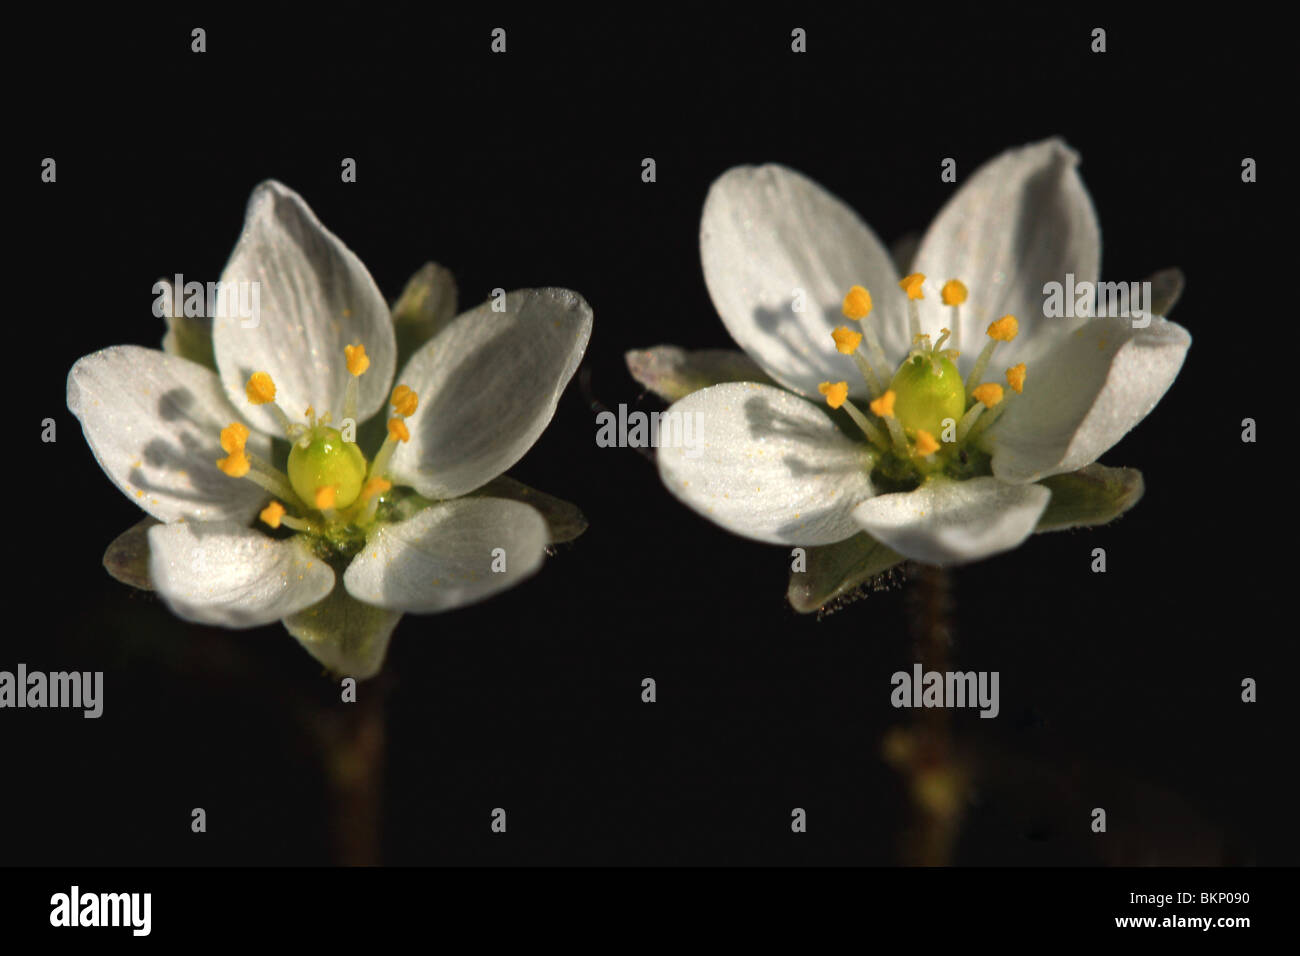 detail van 2 bloemen Stock Photo